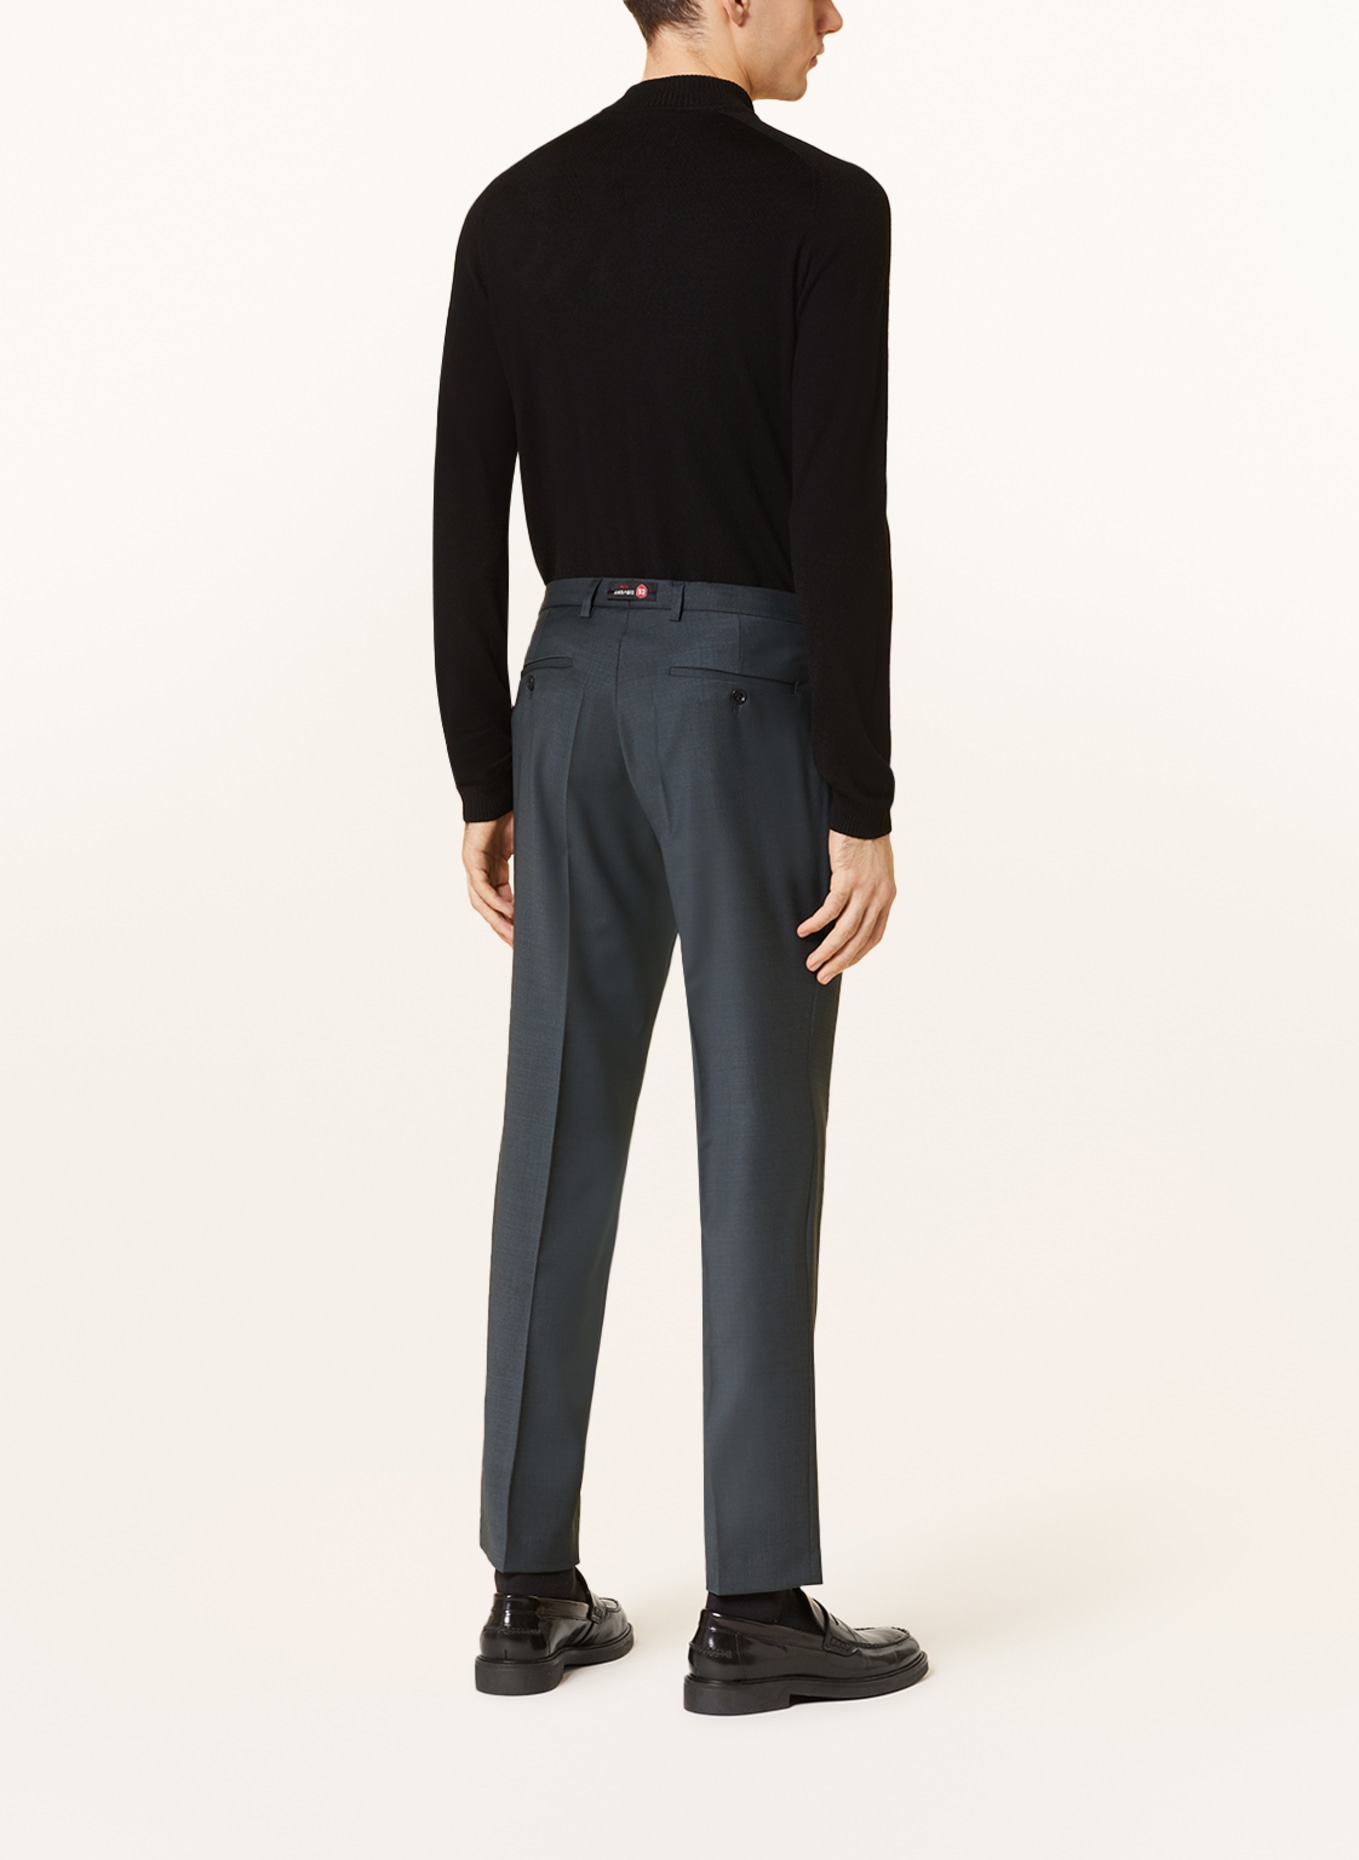 CG - CLUB of GENTS Suit trousers COLE slim fit, Color: 53 gruen dunkel (Image 4)